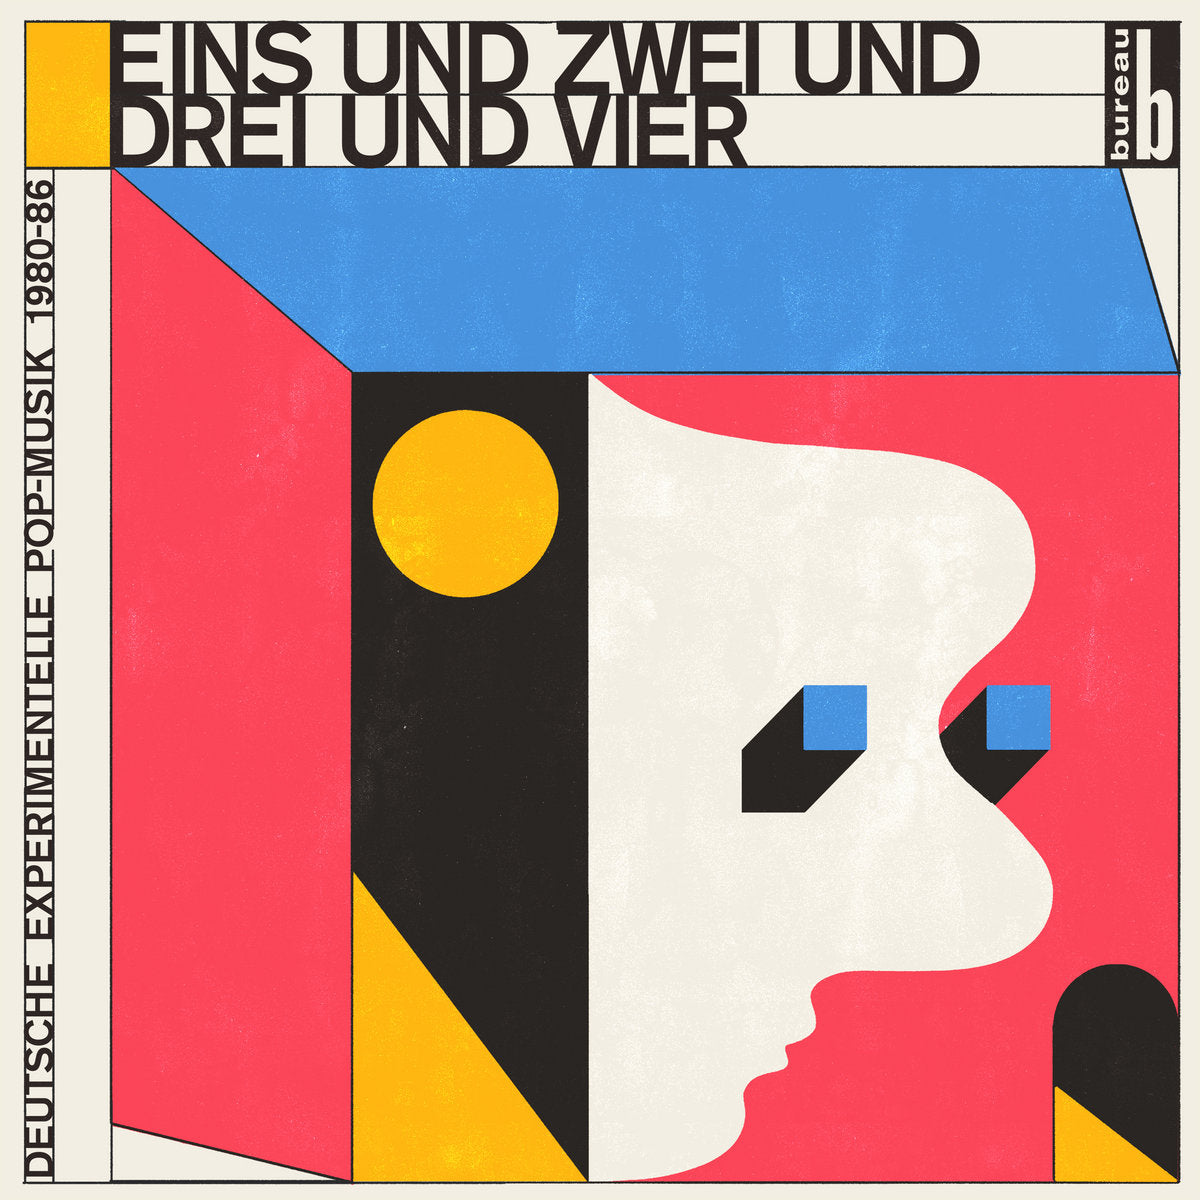 Eins und Zwei und Drei und Vier - Deutsche Experimentelle Pop-Musik 1980-86 (New 2LP)